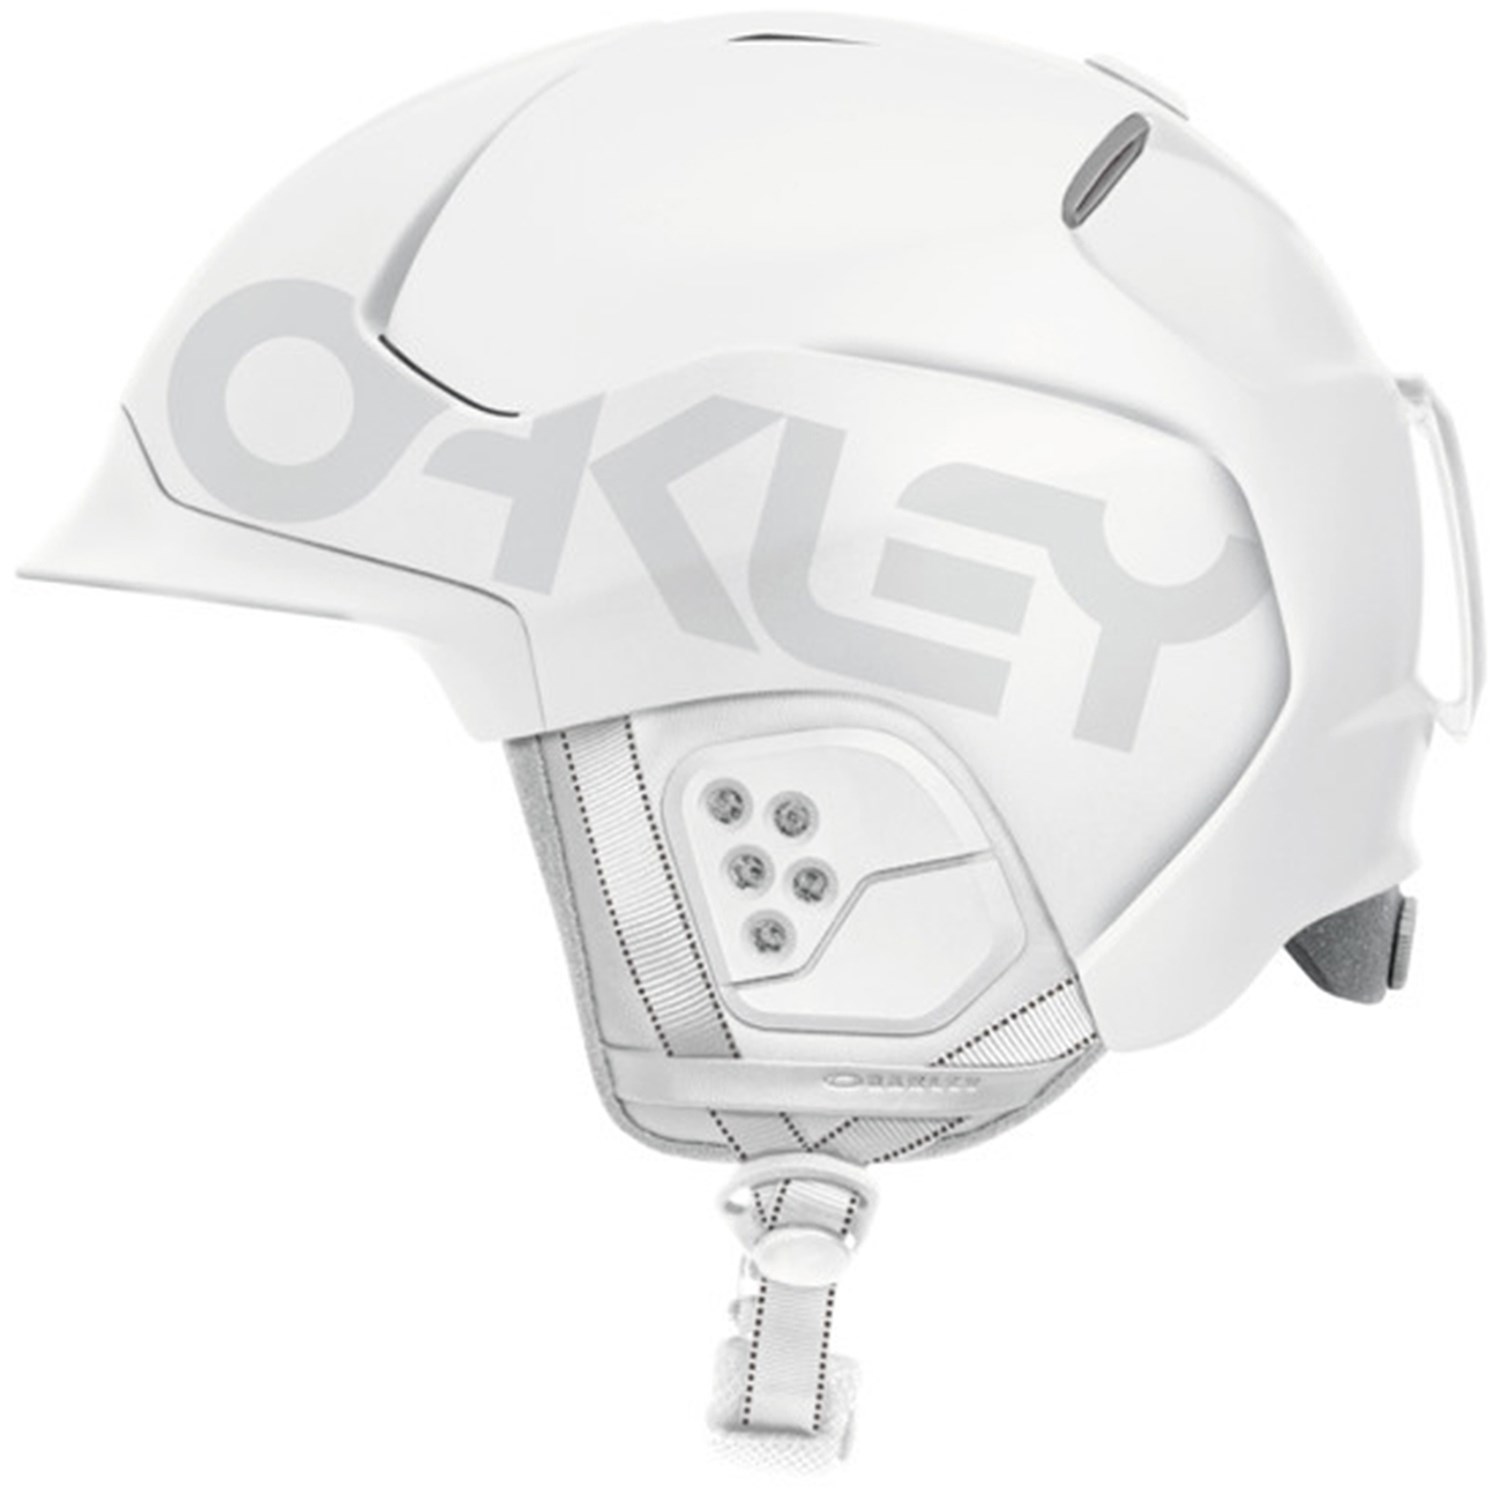 oakley mod 5 mips helmet review